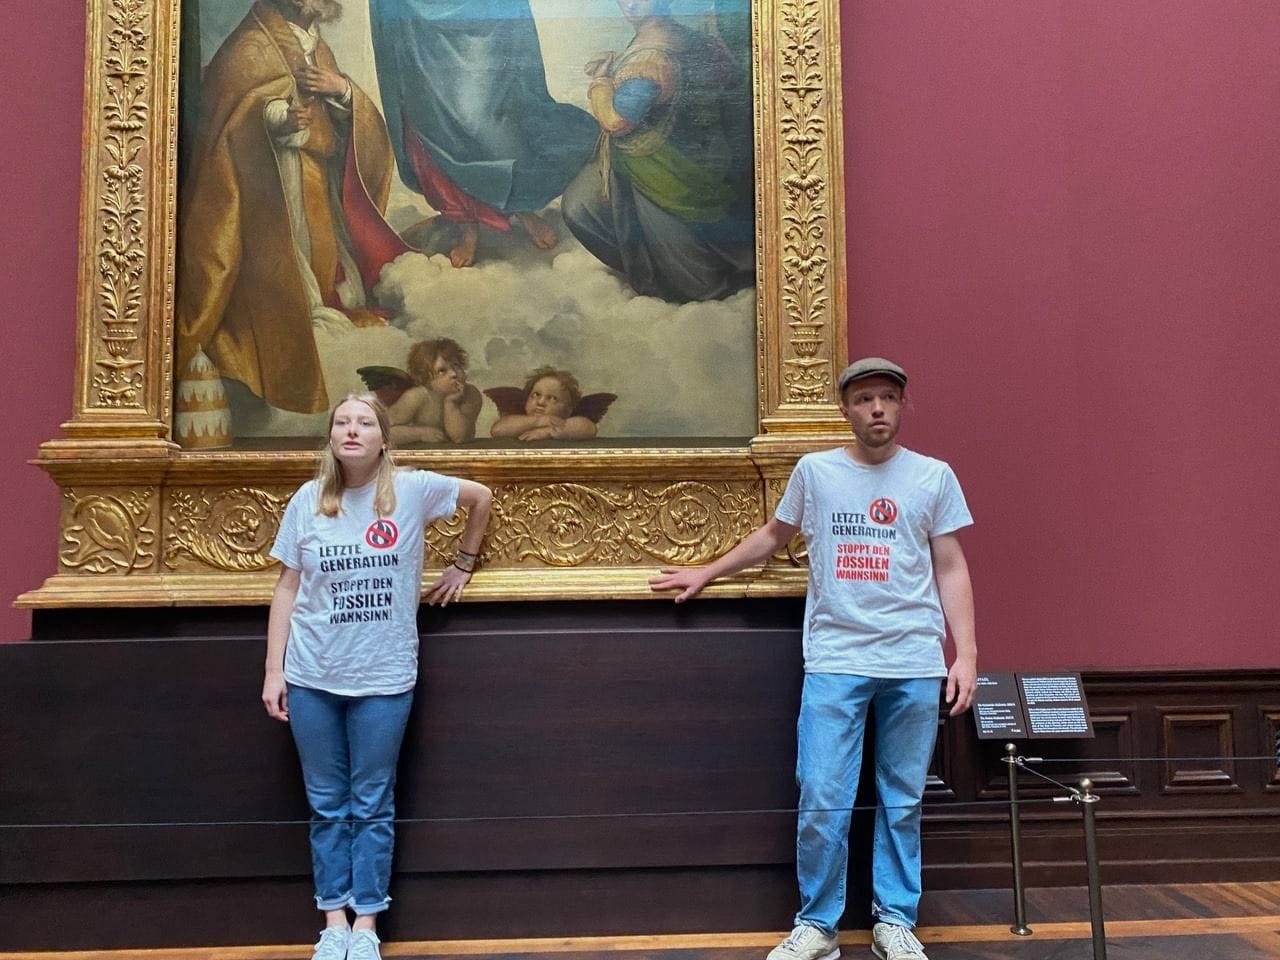 Museumsaktion in der Gemäldegalerie Alte Meister in Dresden im August 2022: Zwei Klimaaktivisten der "Letzten Generation" klebten sich an den Rahmen von Raffaels "Sixtinischer Madonna". Die Aktion sollte verdeutlichen, dass die Klimakatastrophe nicht mehr zu ignorieren sei.